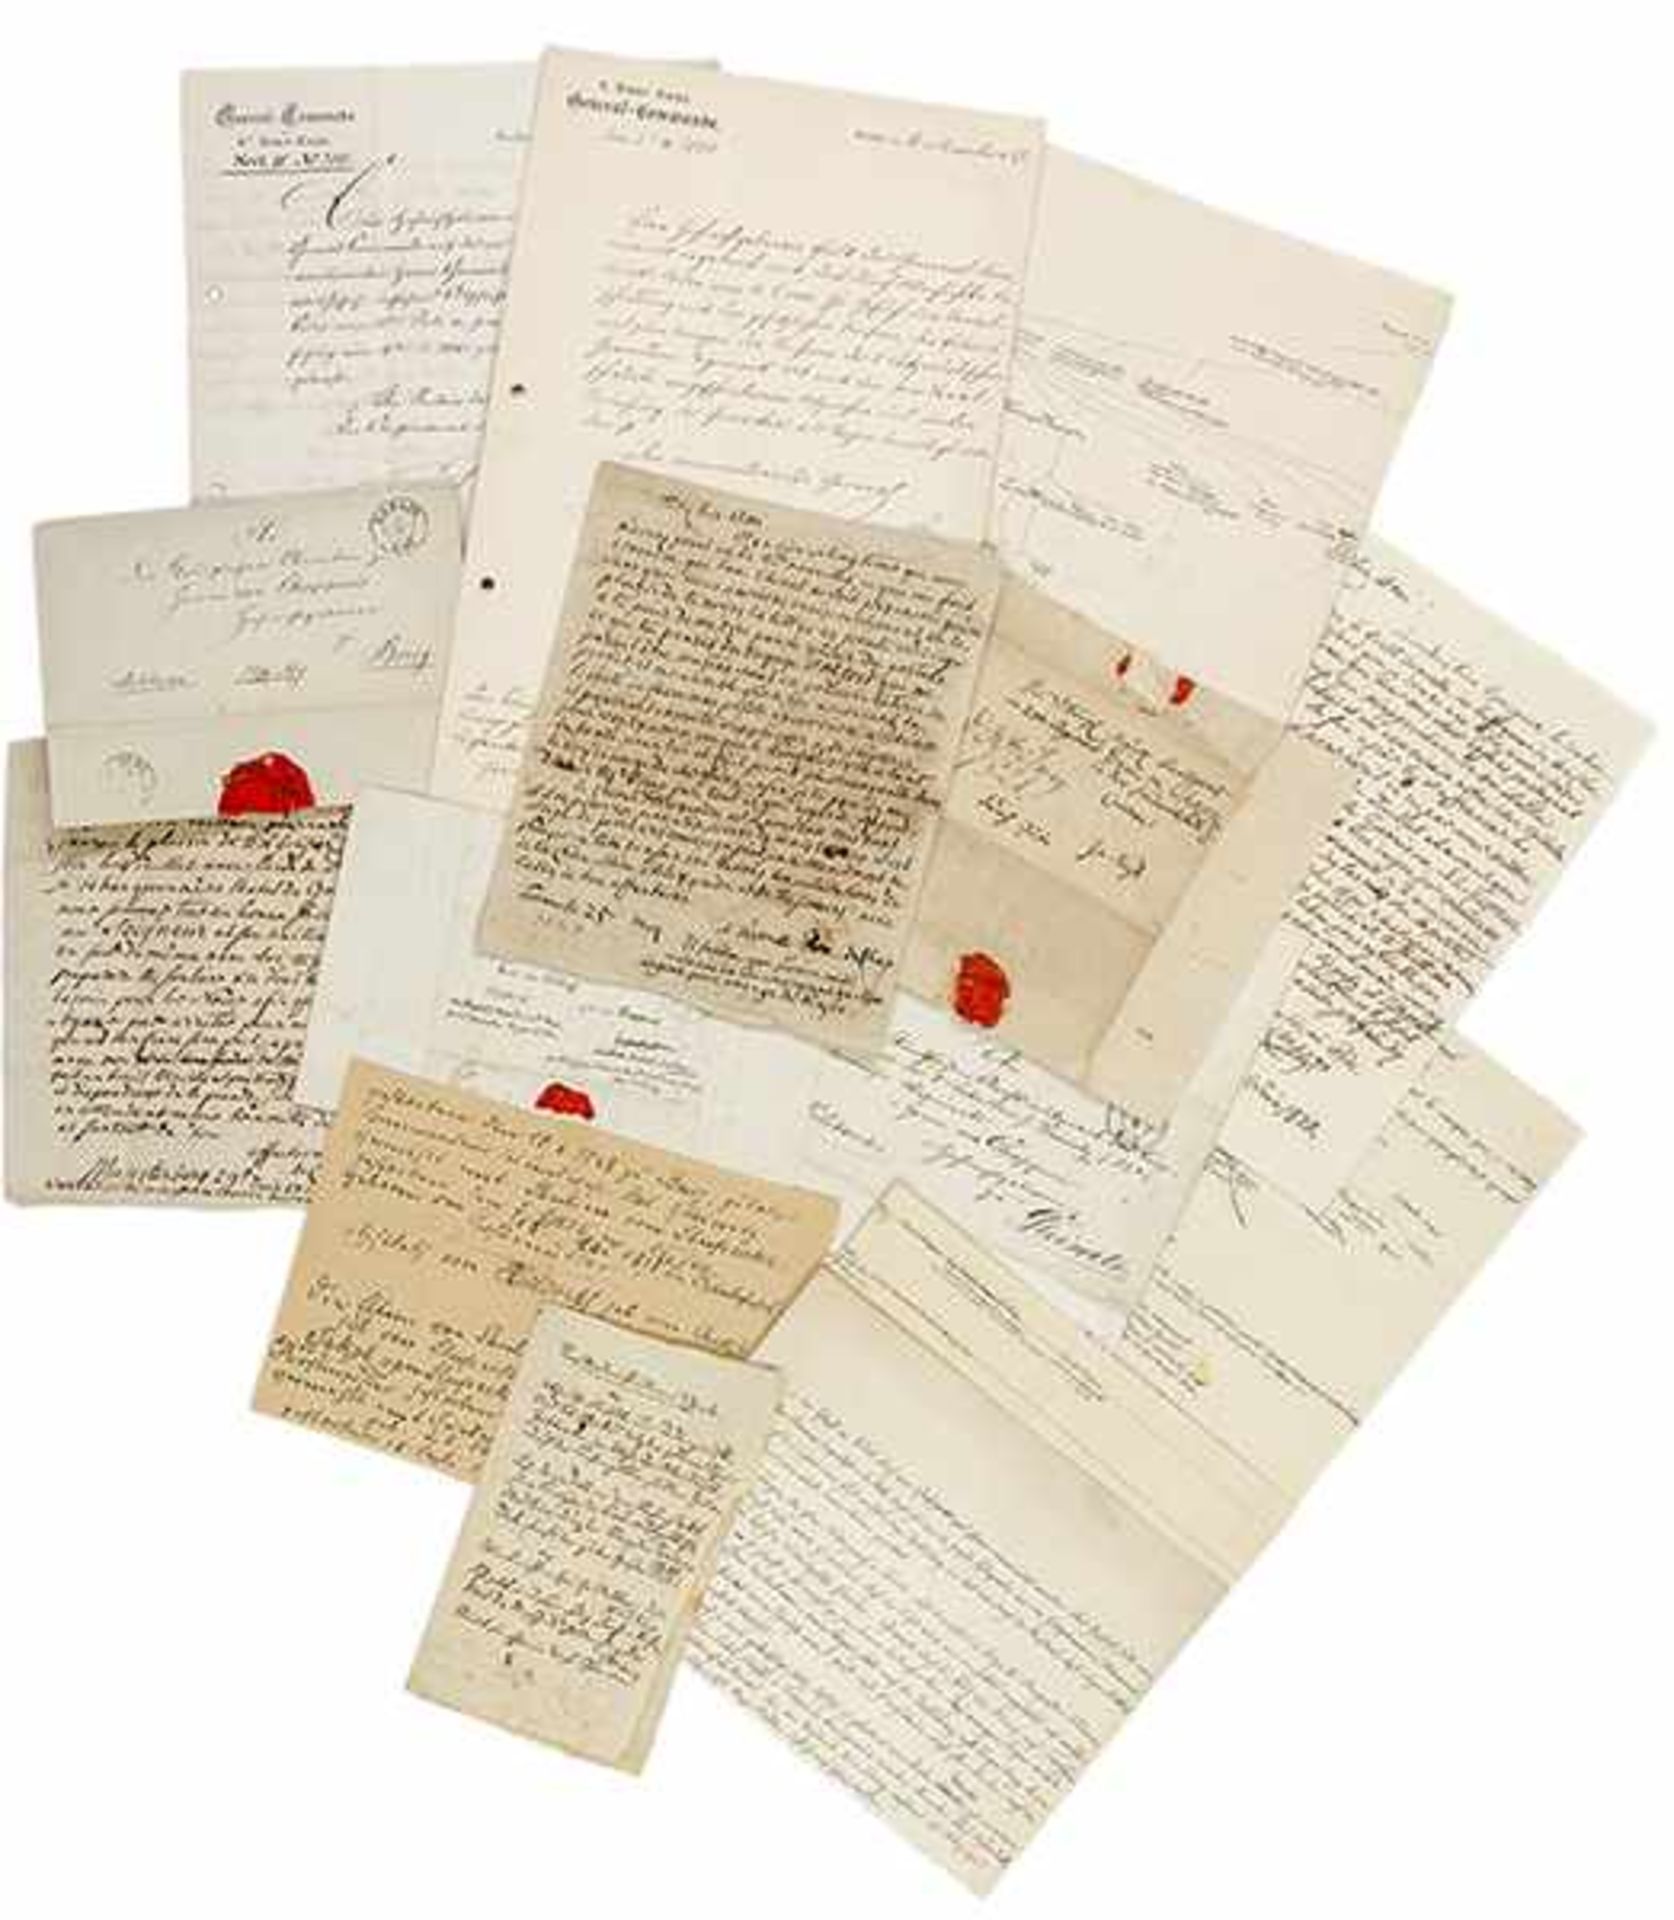 Sammlung von 10 Feldpostbriefen. Deutsche und französische Handschrift auf Papier. Faltbriefe.